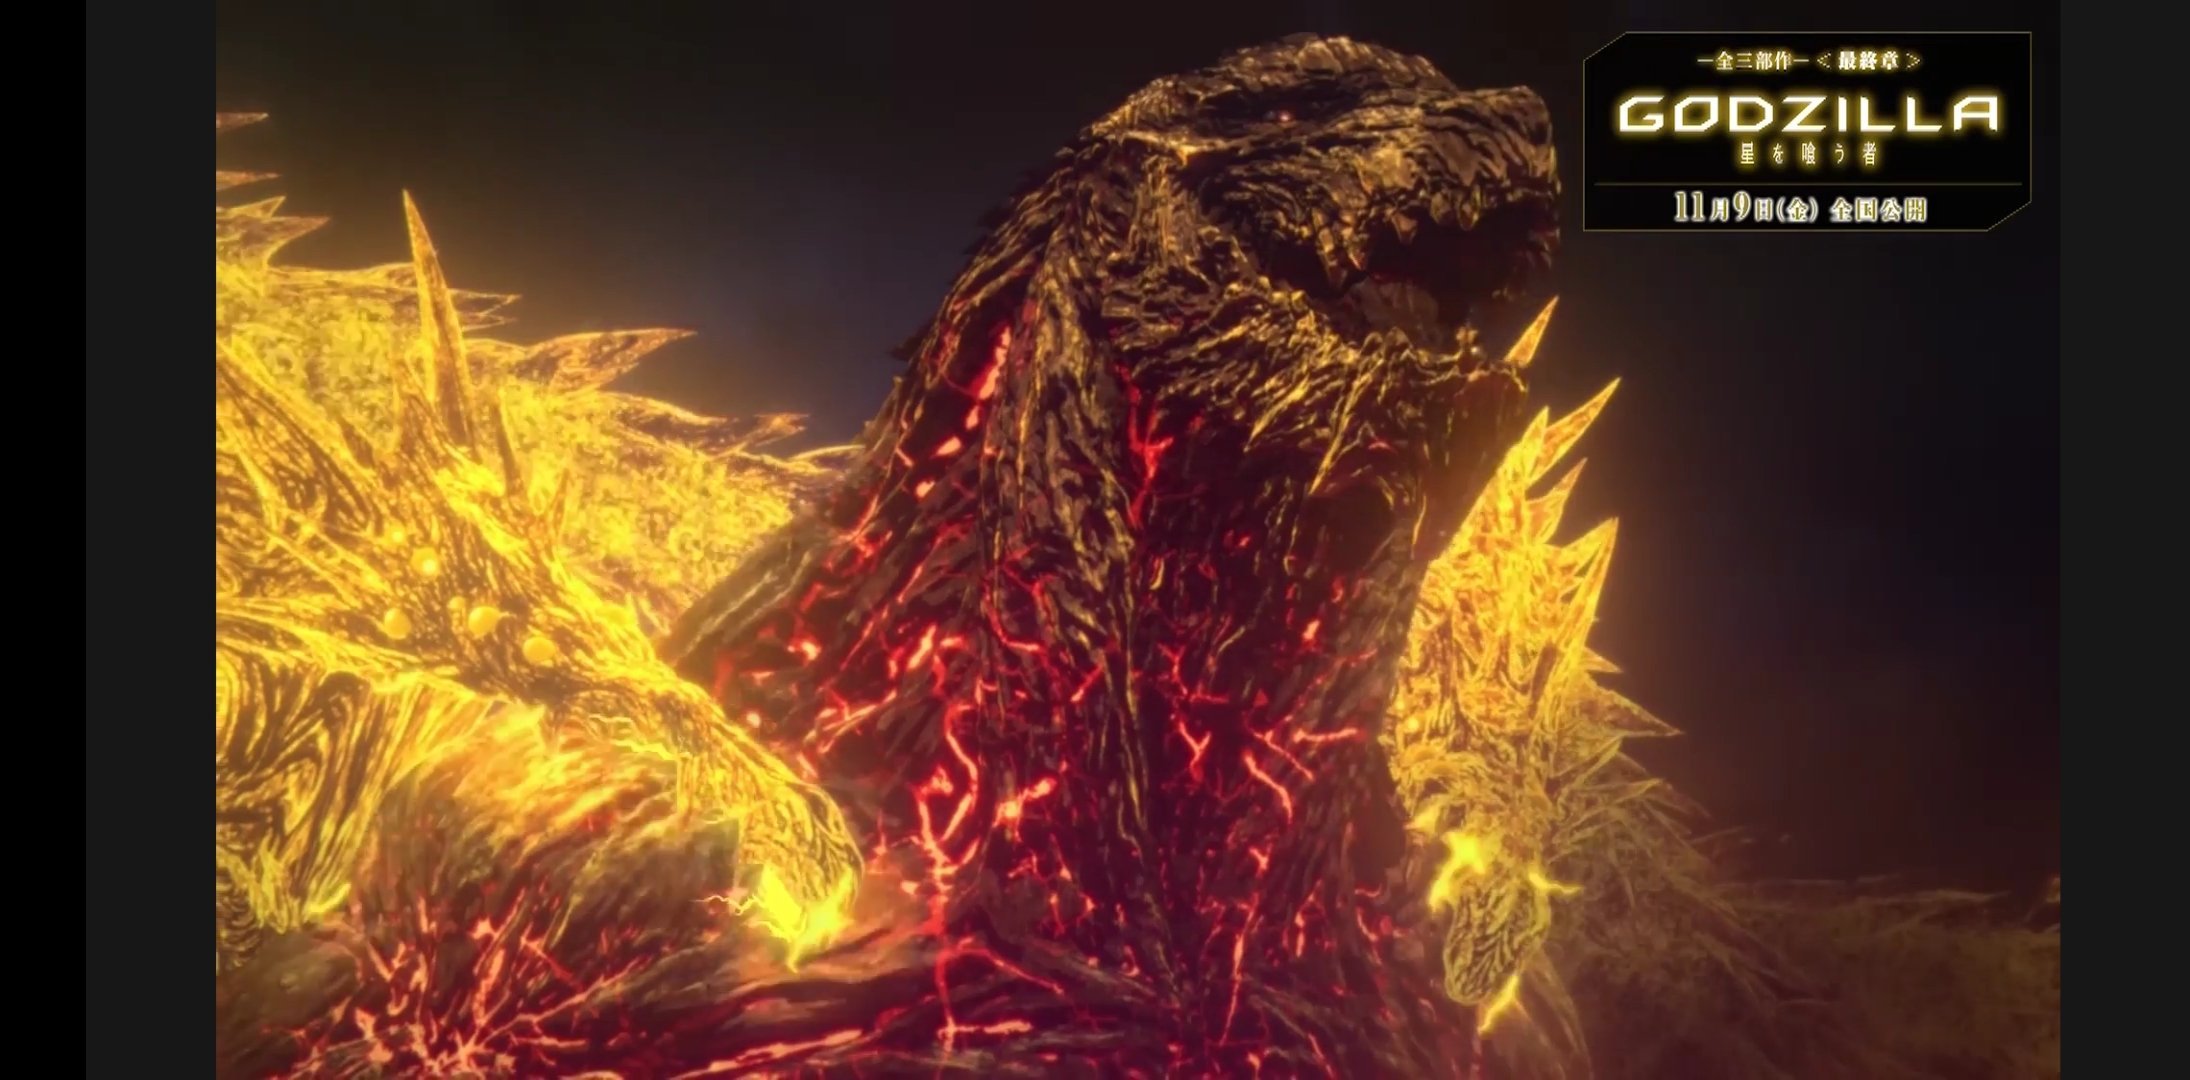 GAMERA -Rebirth- Image Gallery From Netflix, Kaiju - Monsters